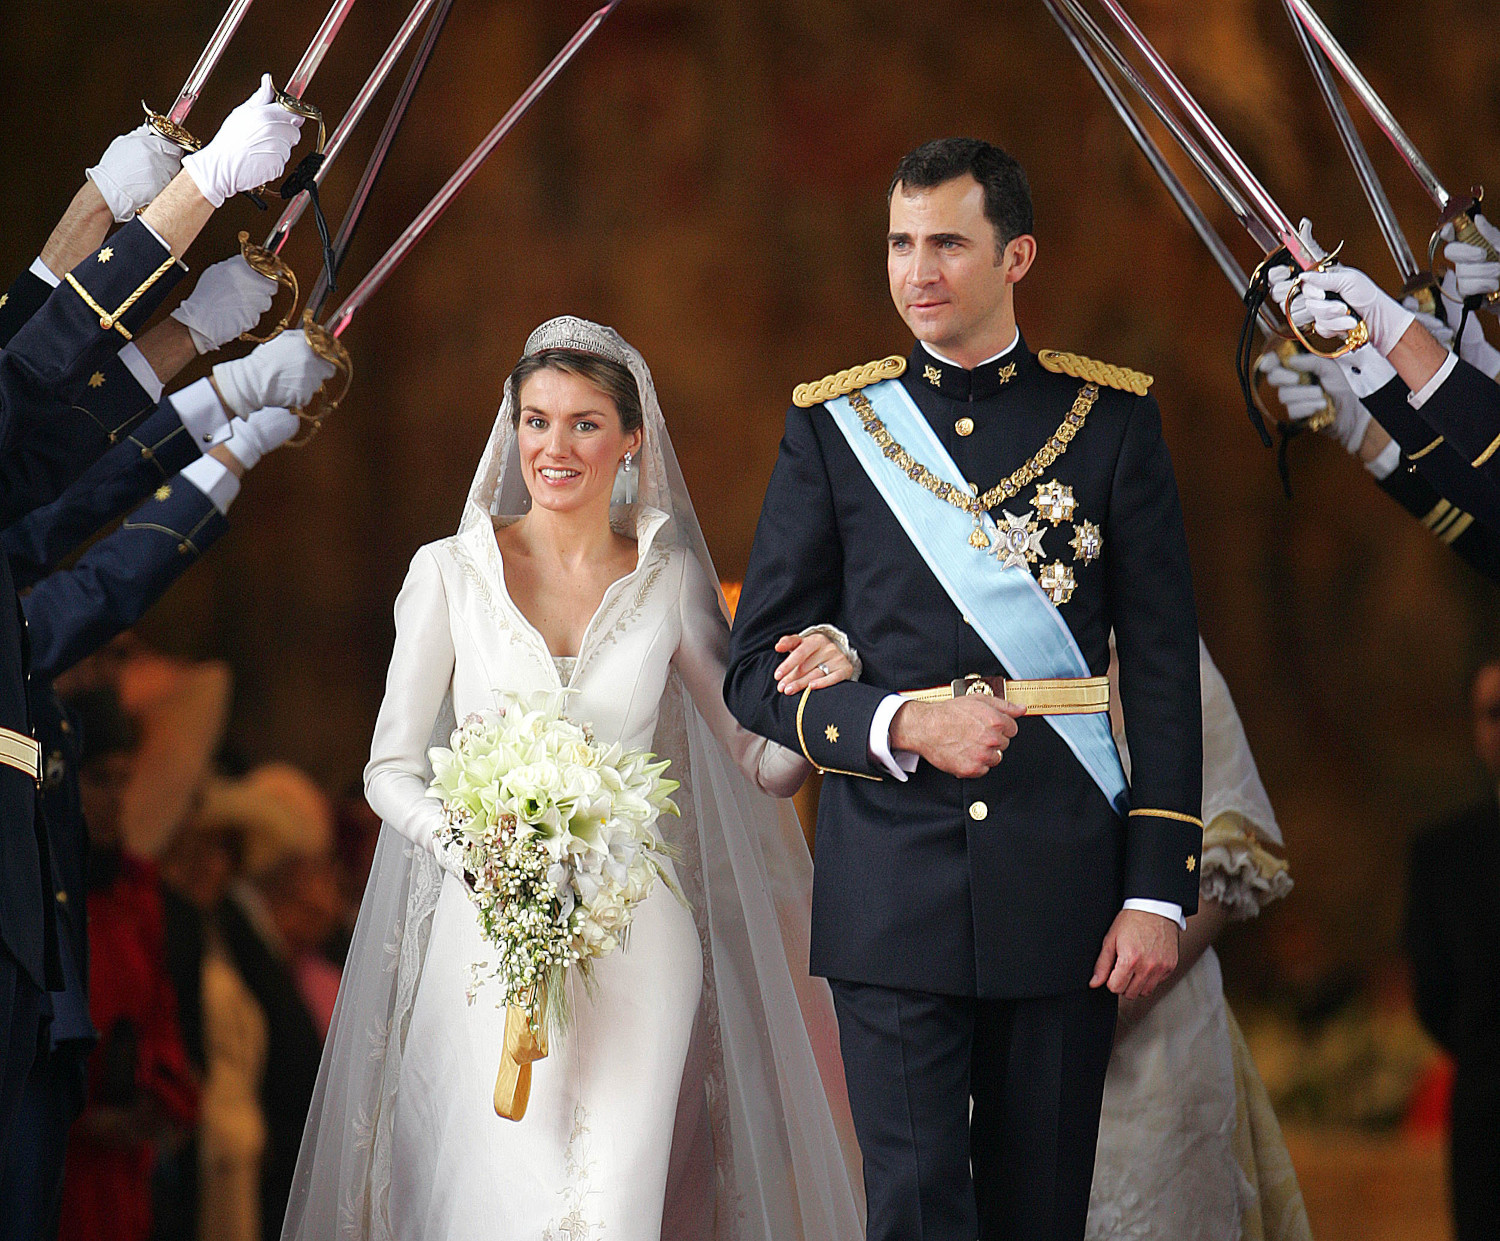 Ο γάμος του βασιλιά Φελίπε και της βασίλισσας Λετίθια/Φωτογραφία: AP